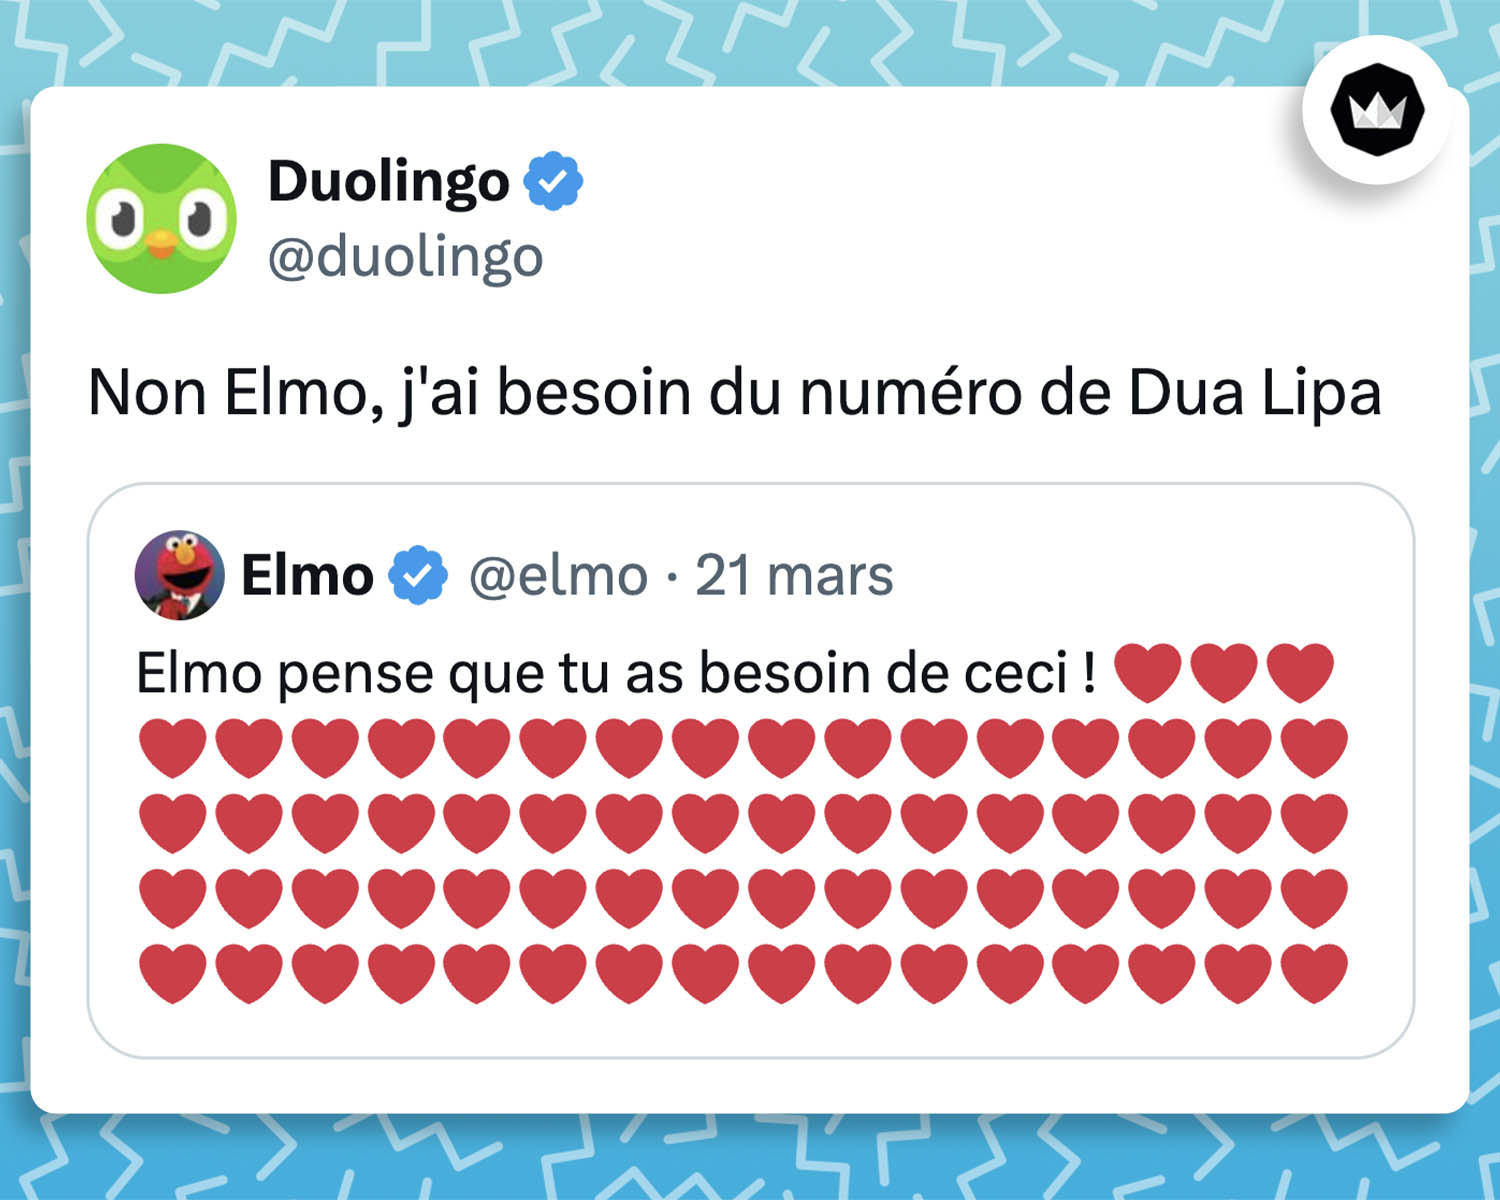 @elmo :
Elmo pense que tu as besoin de ceci ! 
@duolingo :
Non Elmo, j'ai besoin du numéro de Dua Lipa